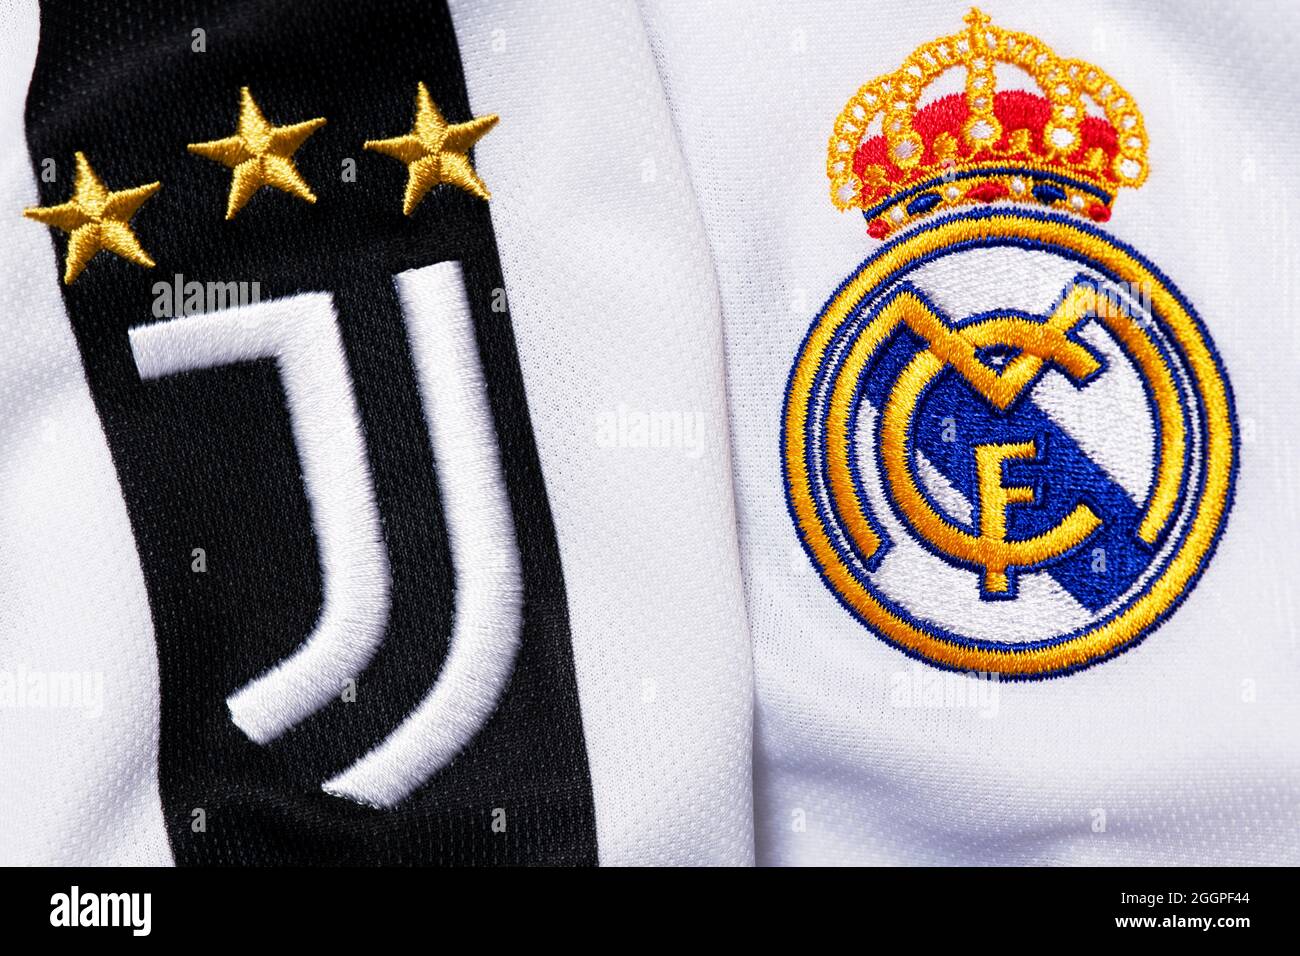 Gros plan sur l'écusson du Juventus et du Real Madrid. Banque D'Images